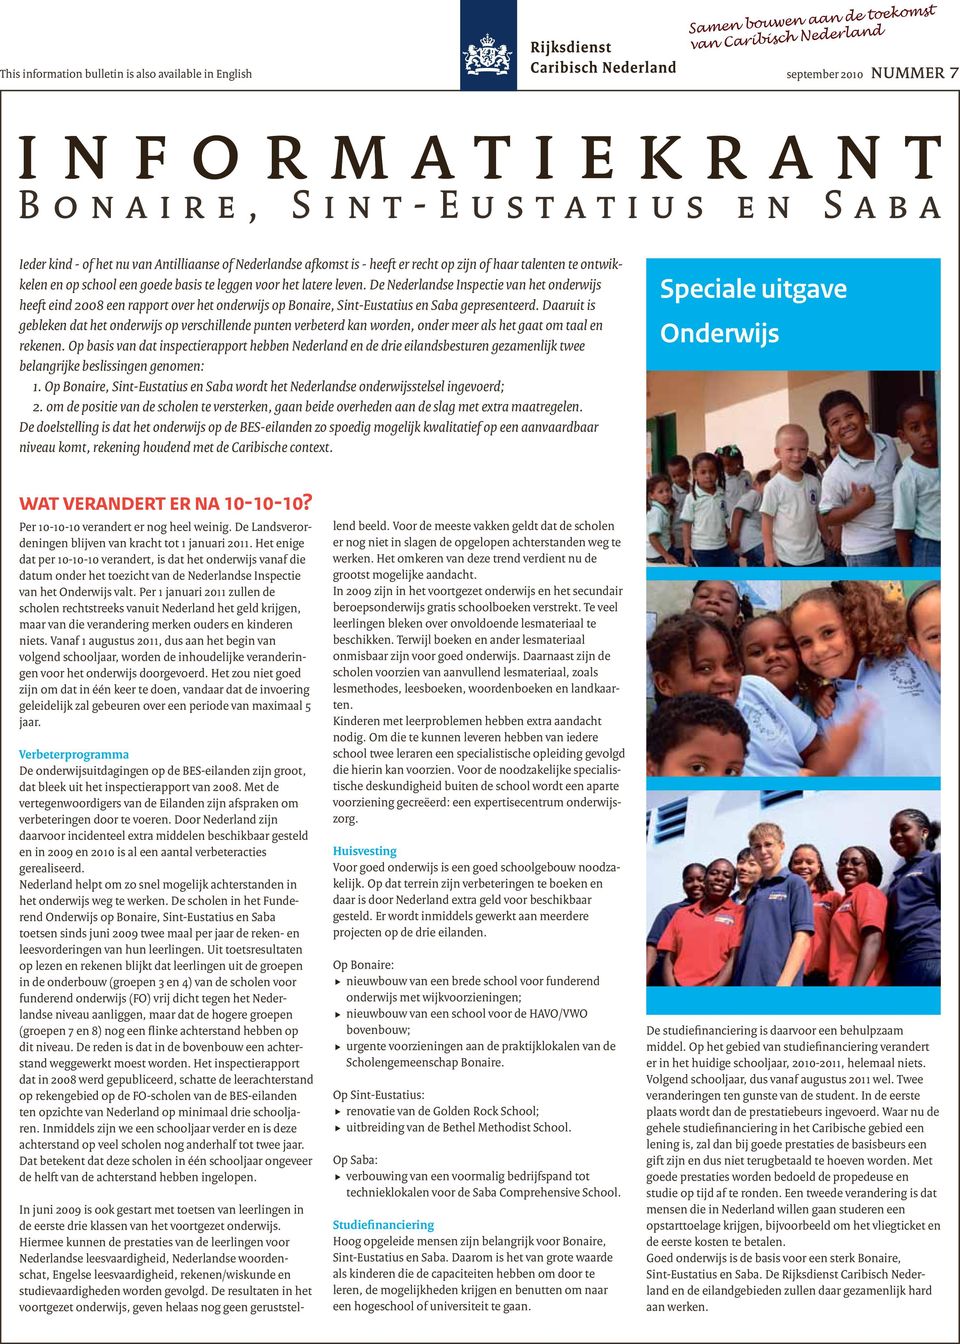 leven. De Nederlandse Inspectie van het onderwijs heeft eind 2008 een rapport over het onderwijs op Bonaire, Sint-Eustatius en Saba gepresenteerd.